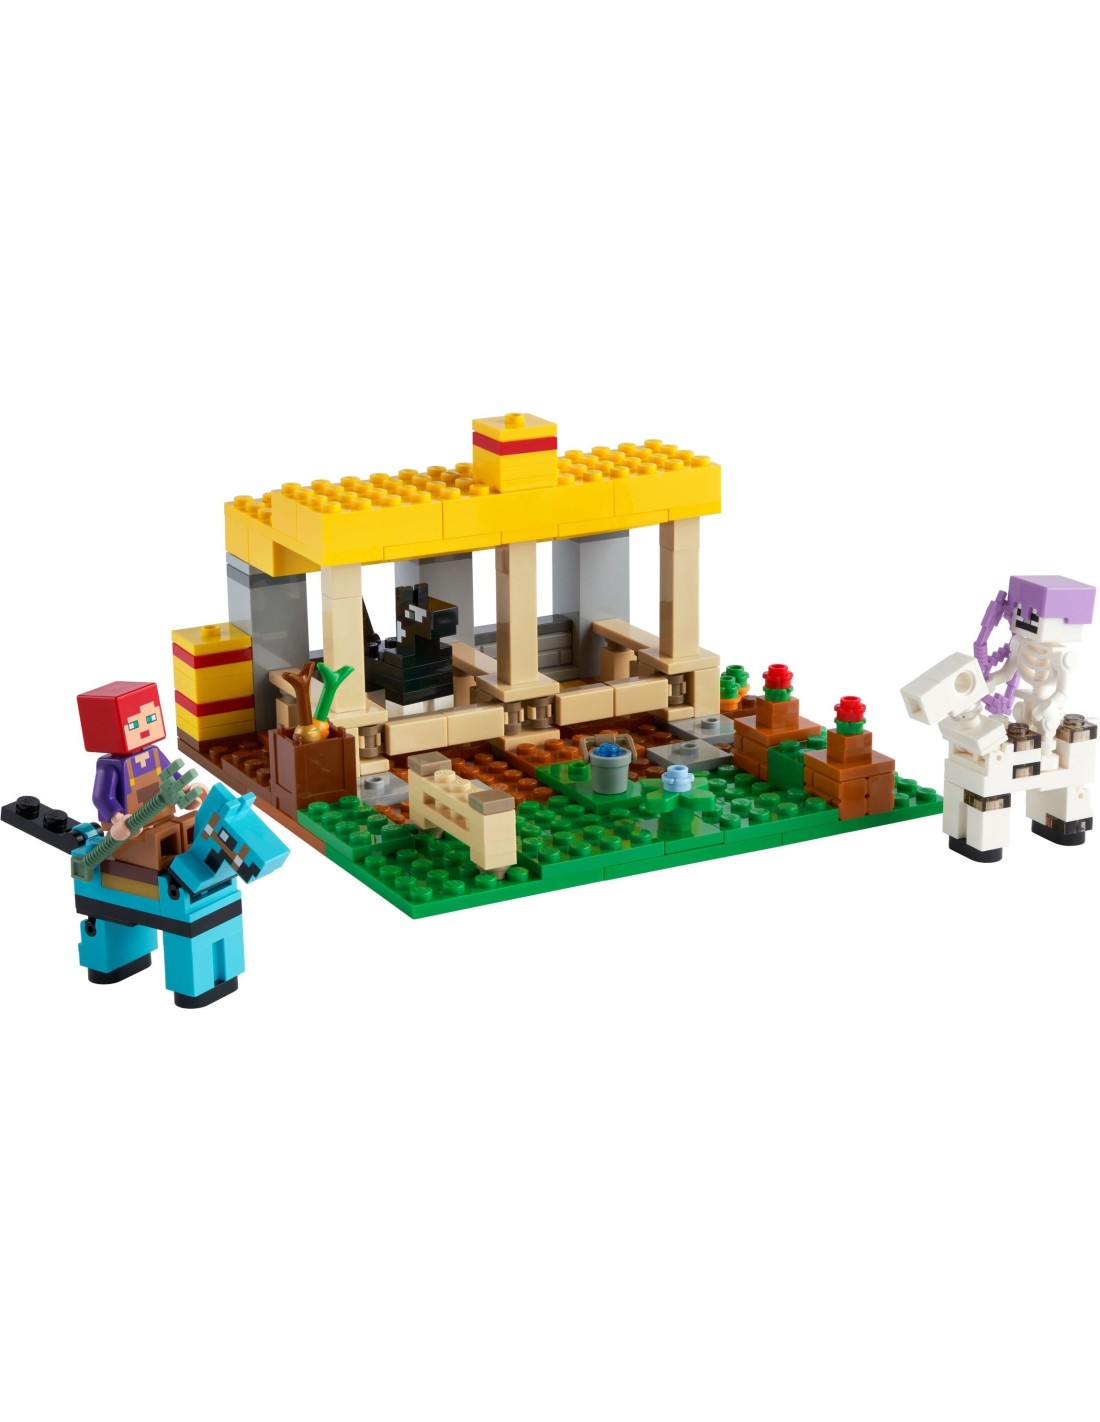 LEGO Minecraft - L'écurie - 21171 - En stock chez